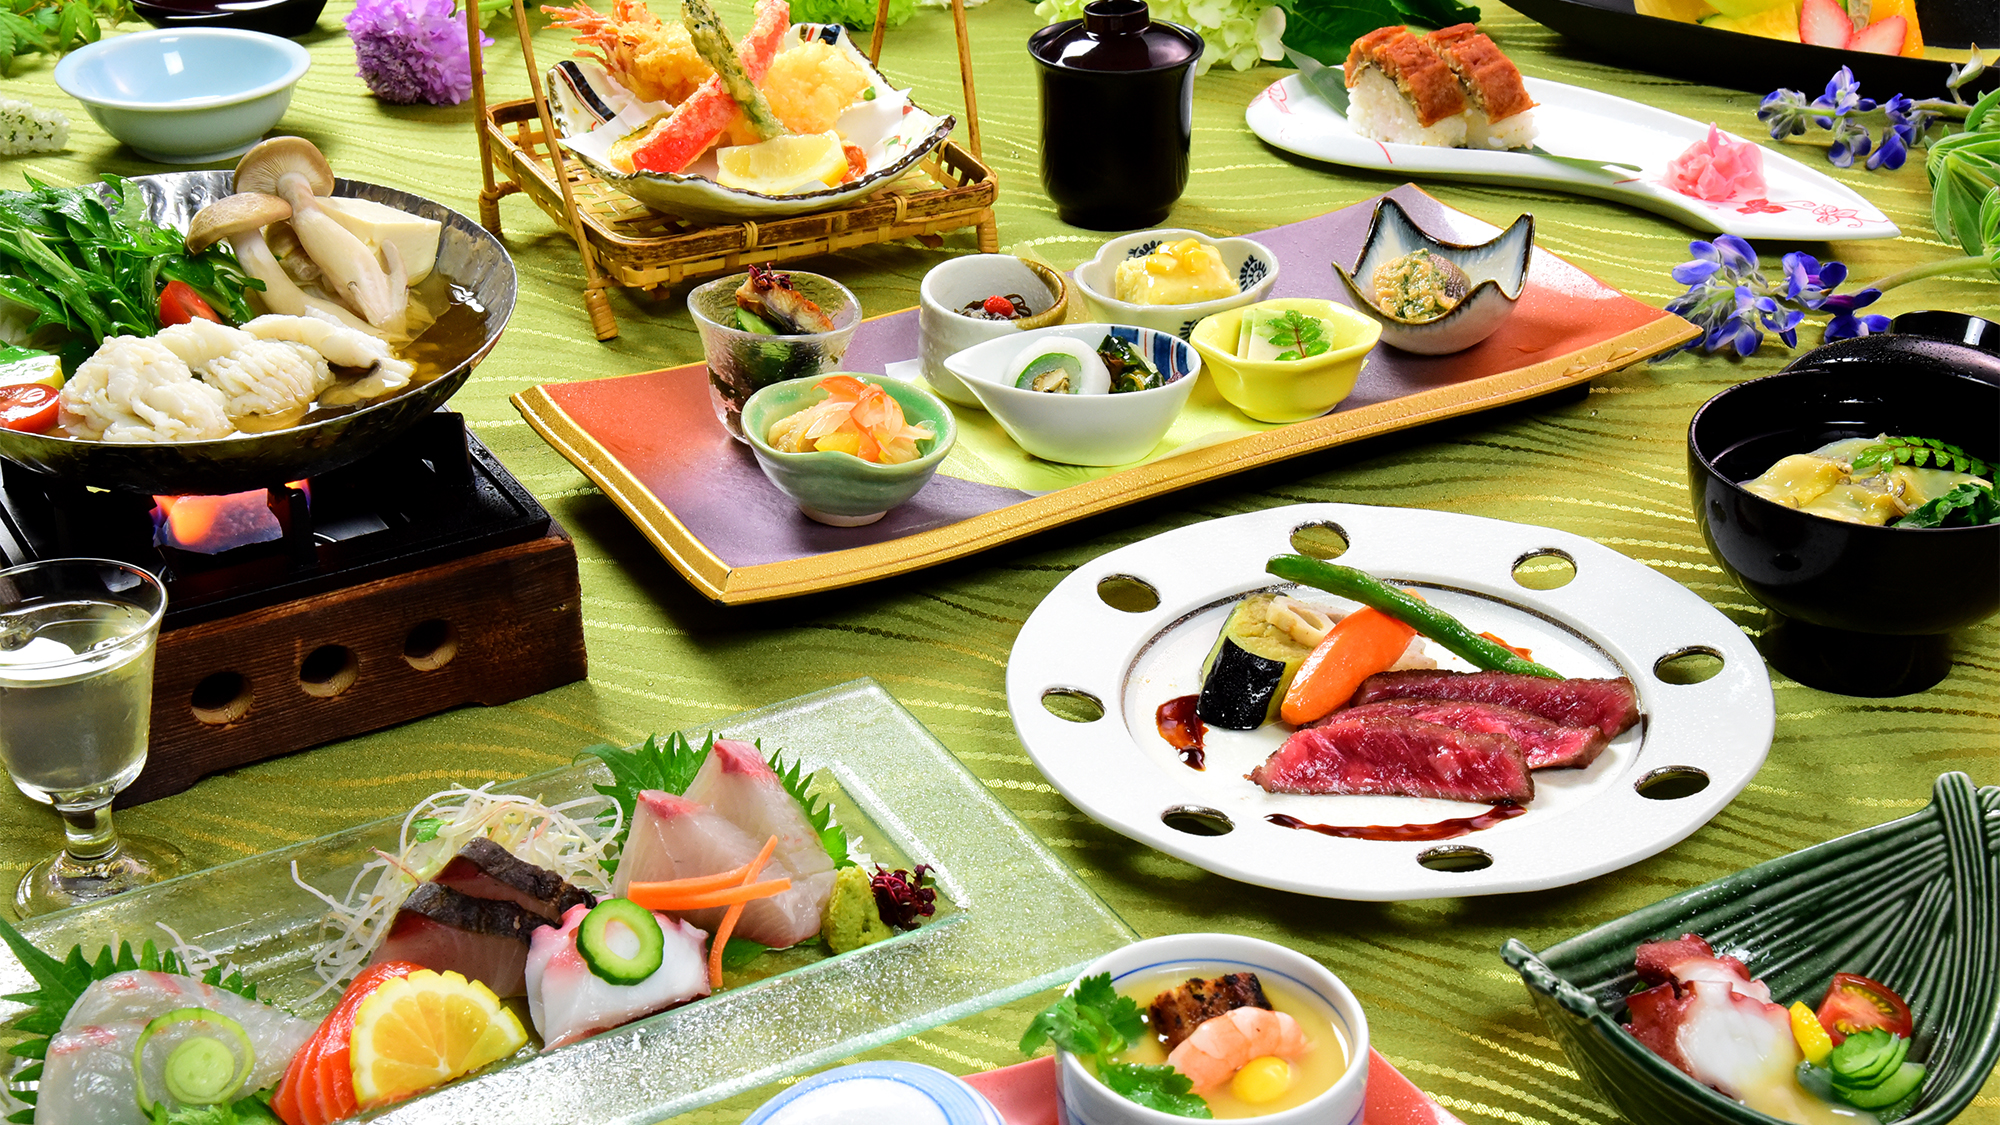 関西の夏の風物詩「鱧」に旬の海の幸、旬菜、牛フィレをたっぷり堪能。